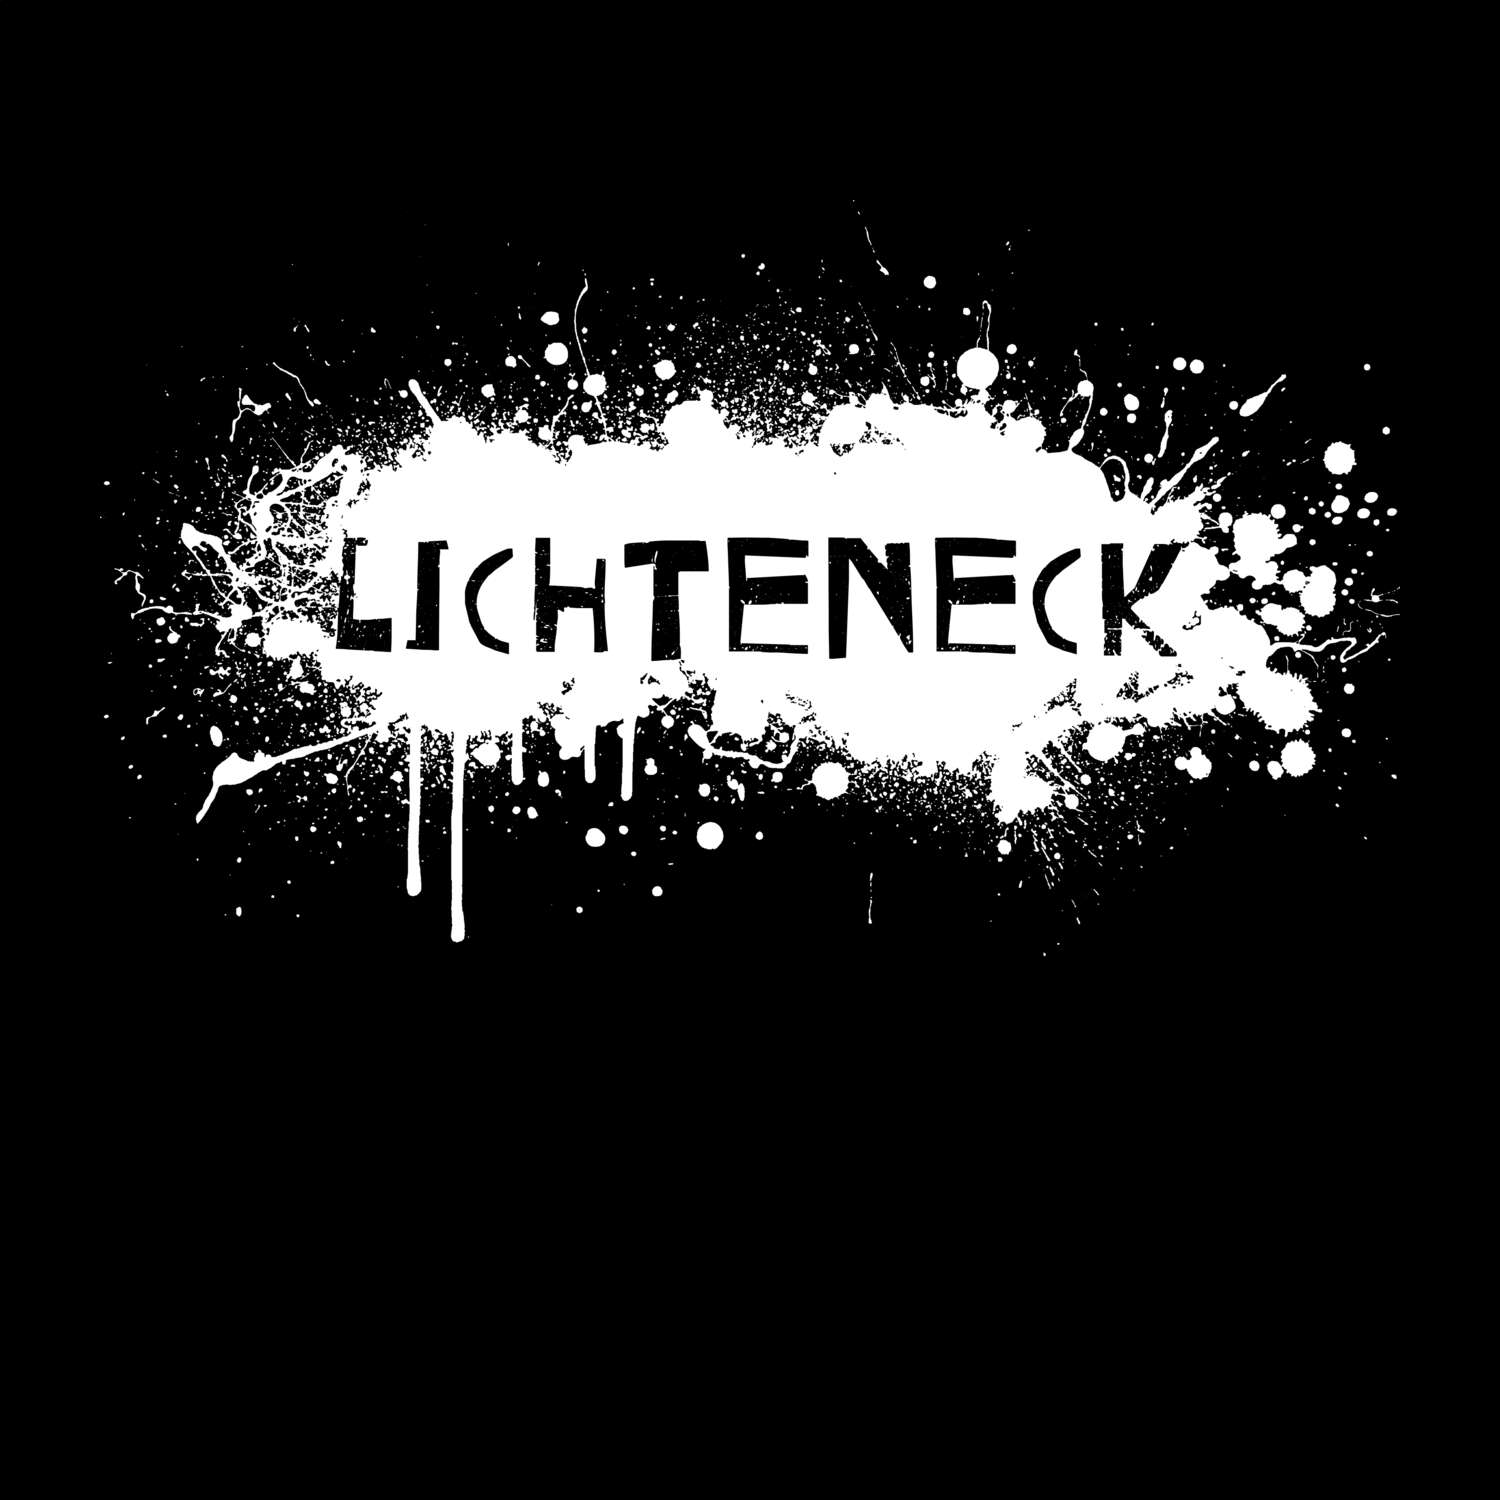 Lichteneck T-Shirt »Paint Splash Punk«